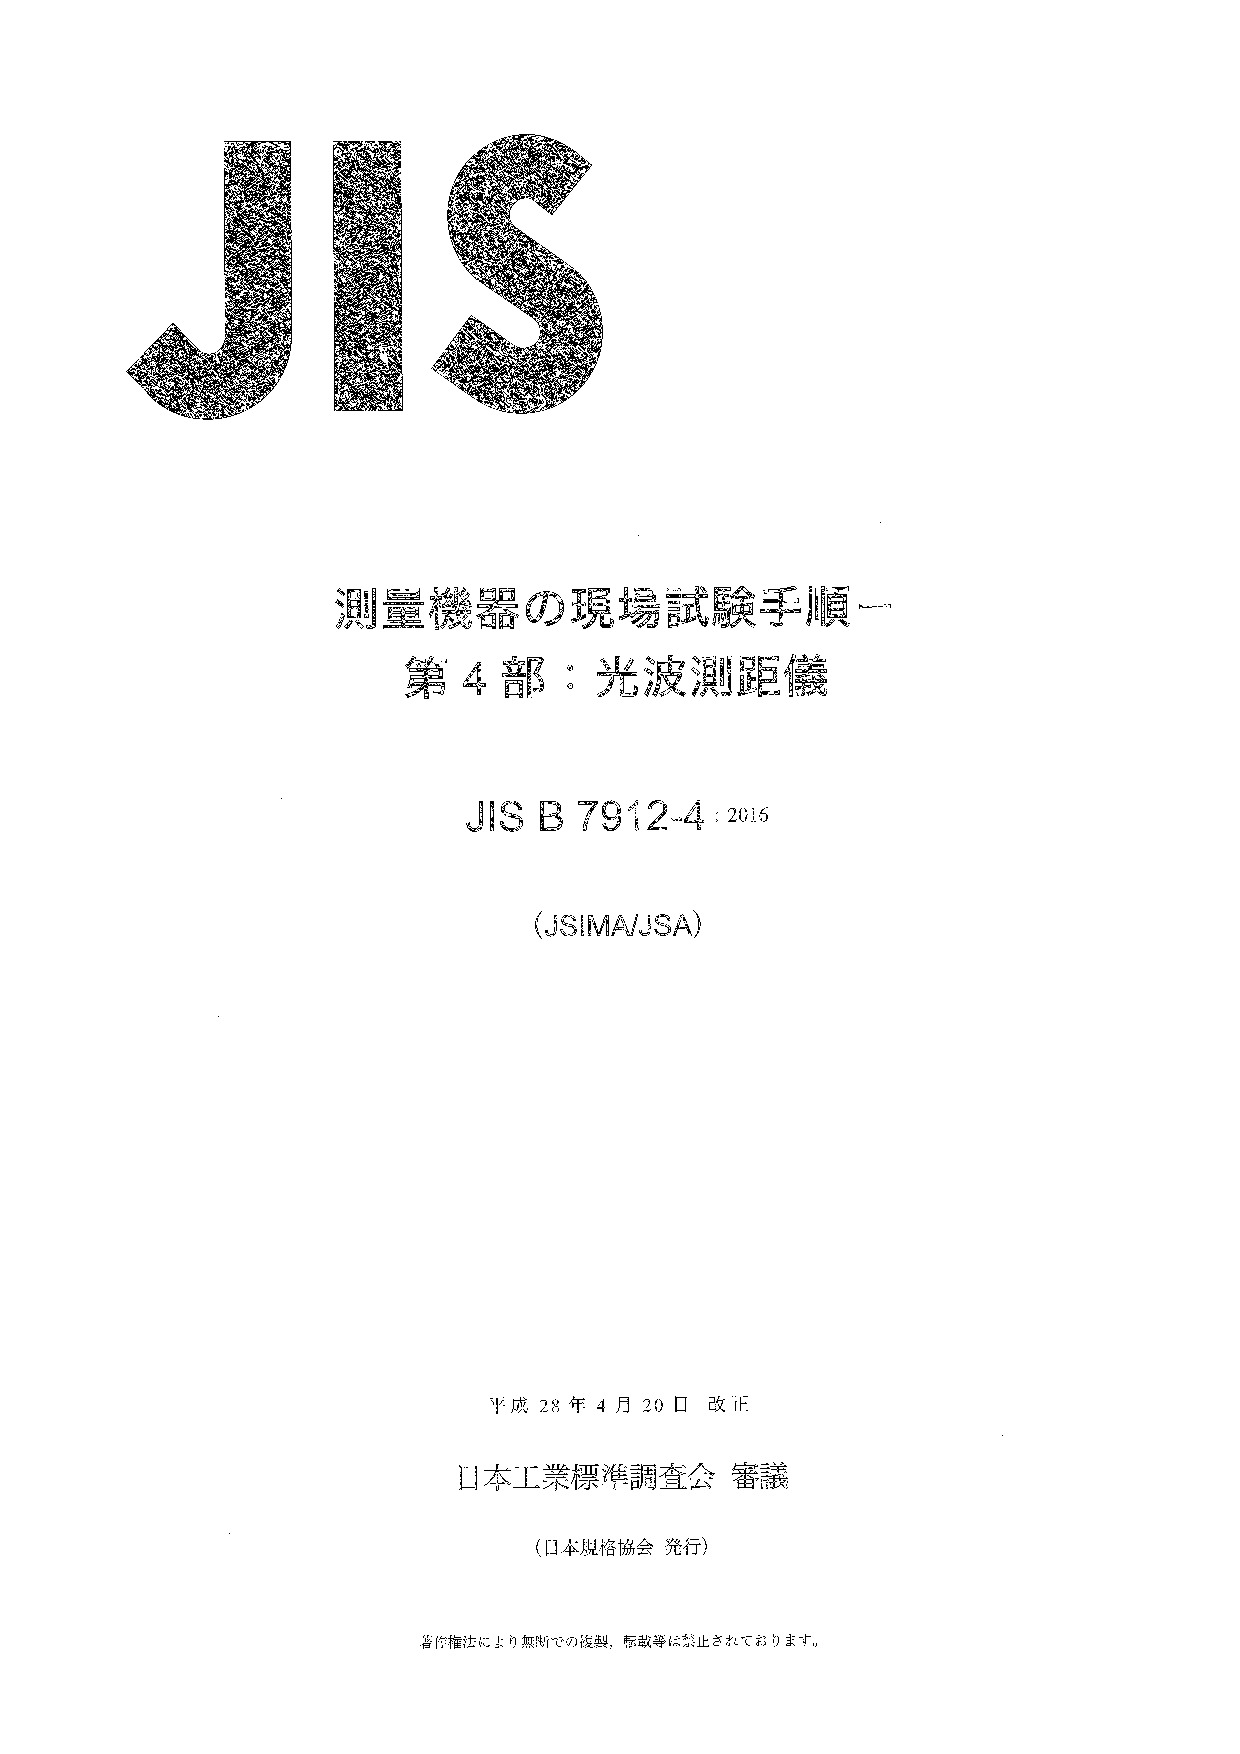 JIS B 7912-4:2016封面图